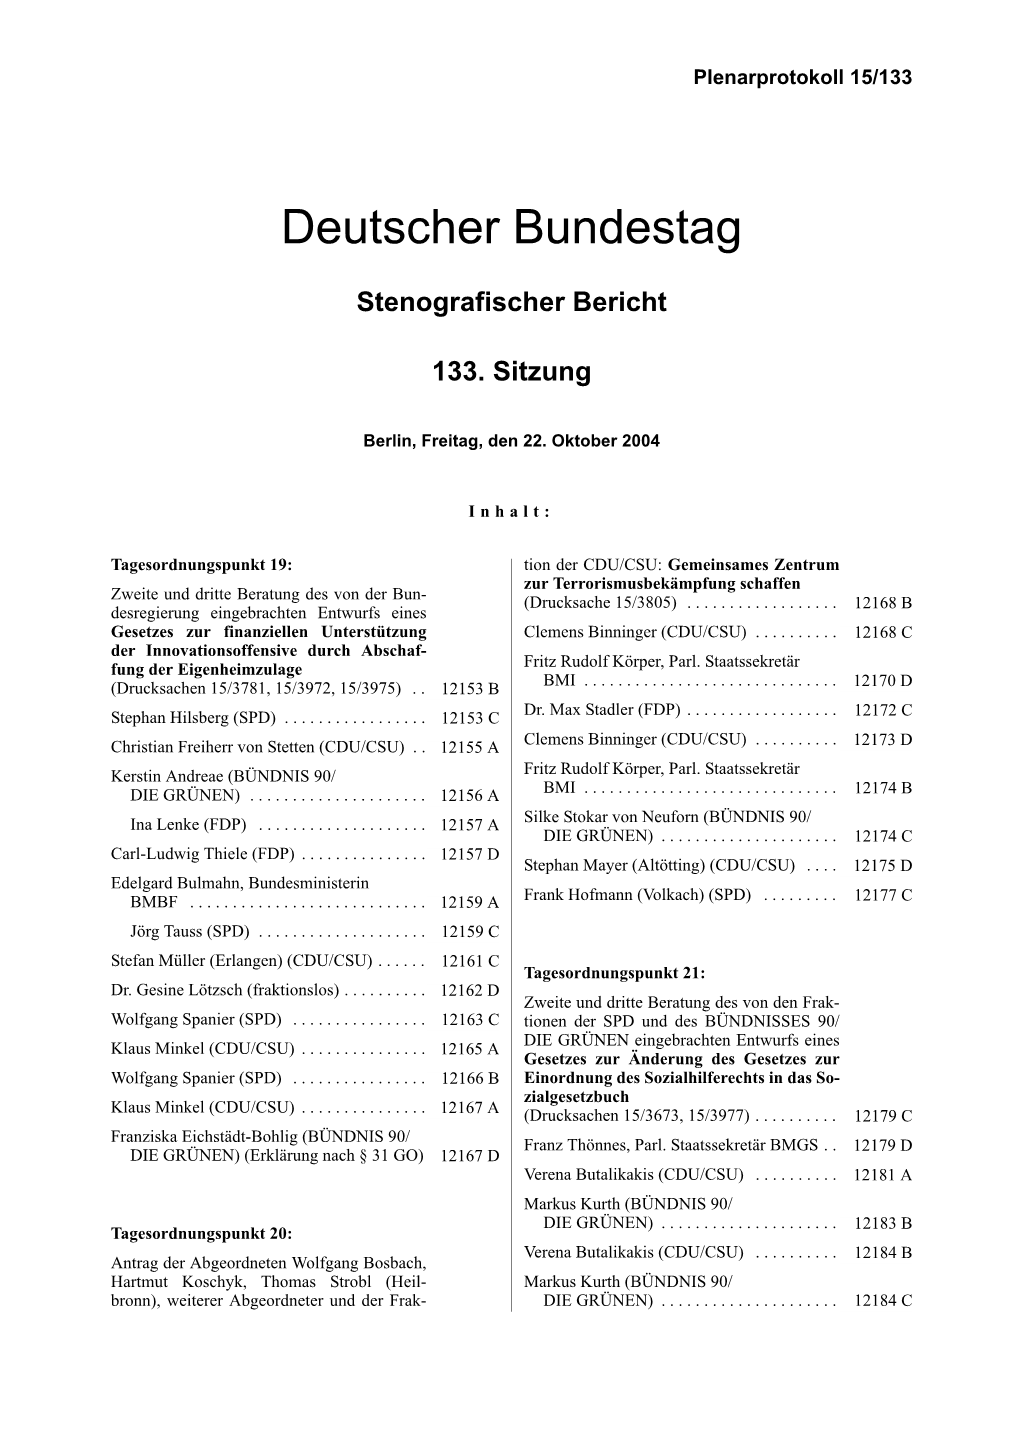 CDU/CSU: Gemeinsames Zentrum Zur Terrorismusbekämpfung Schaffen Zweite Und Dritte Beratung Des Von Der Bun- (Drucksache 15/3805)